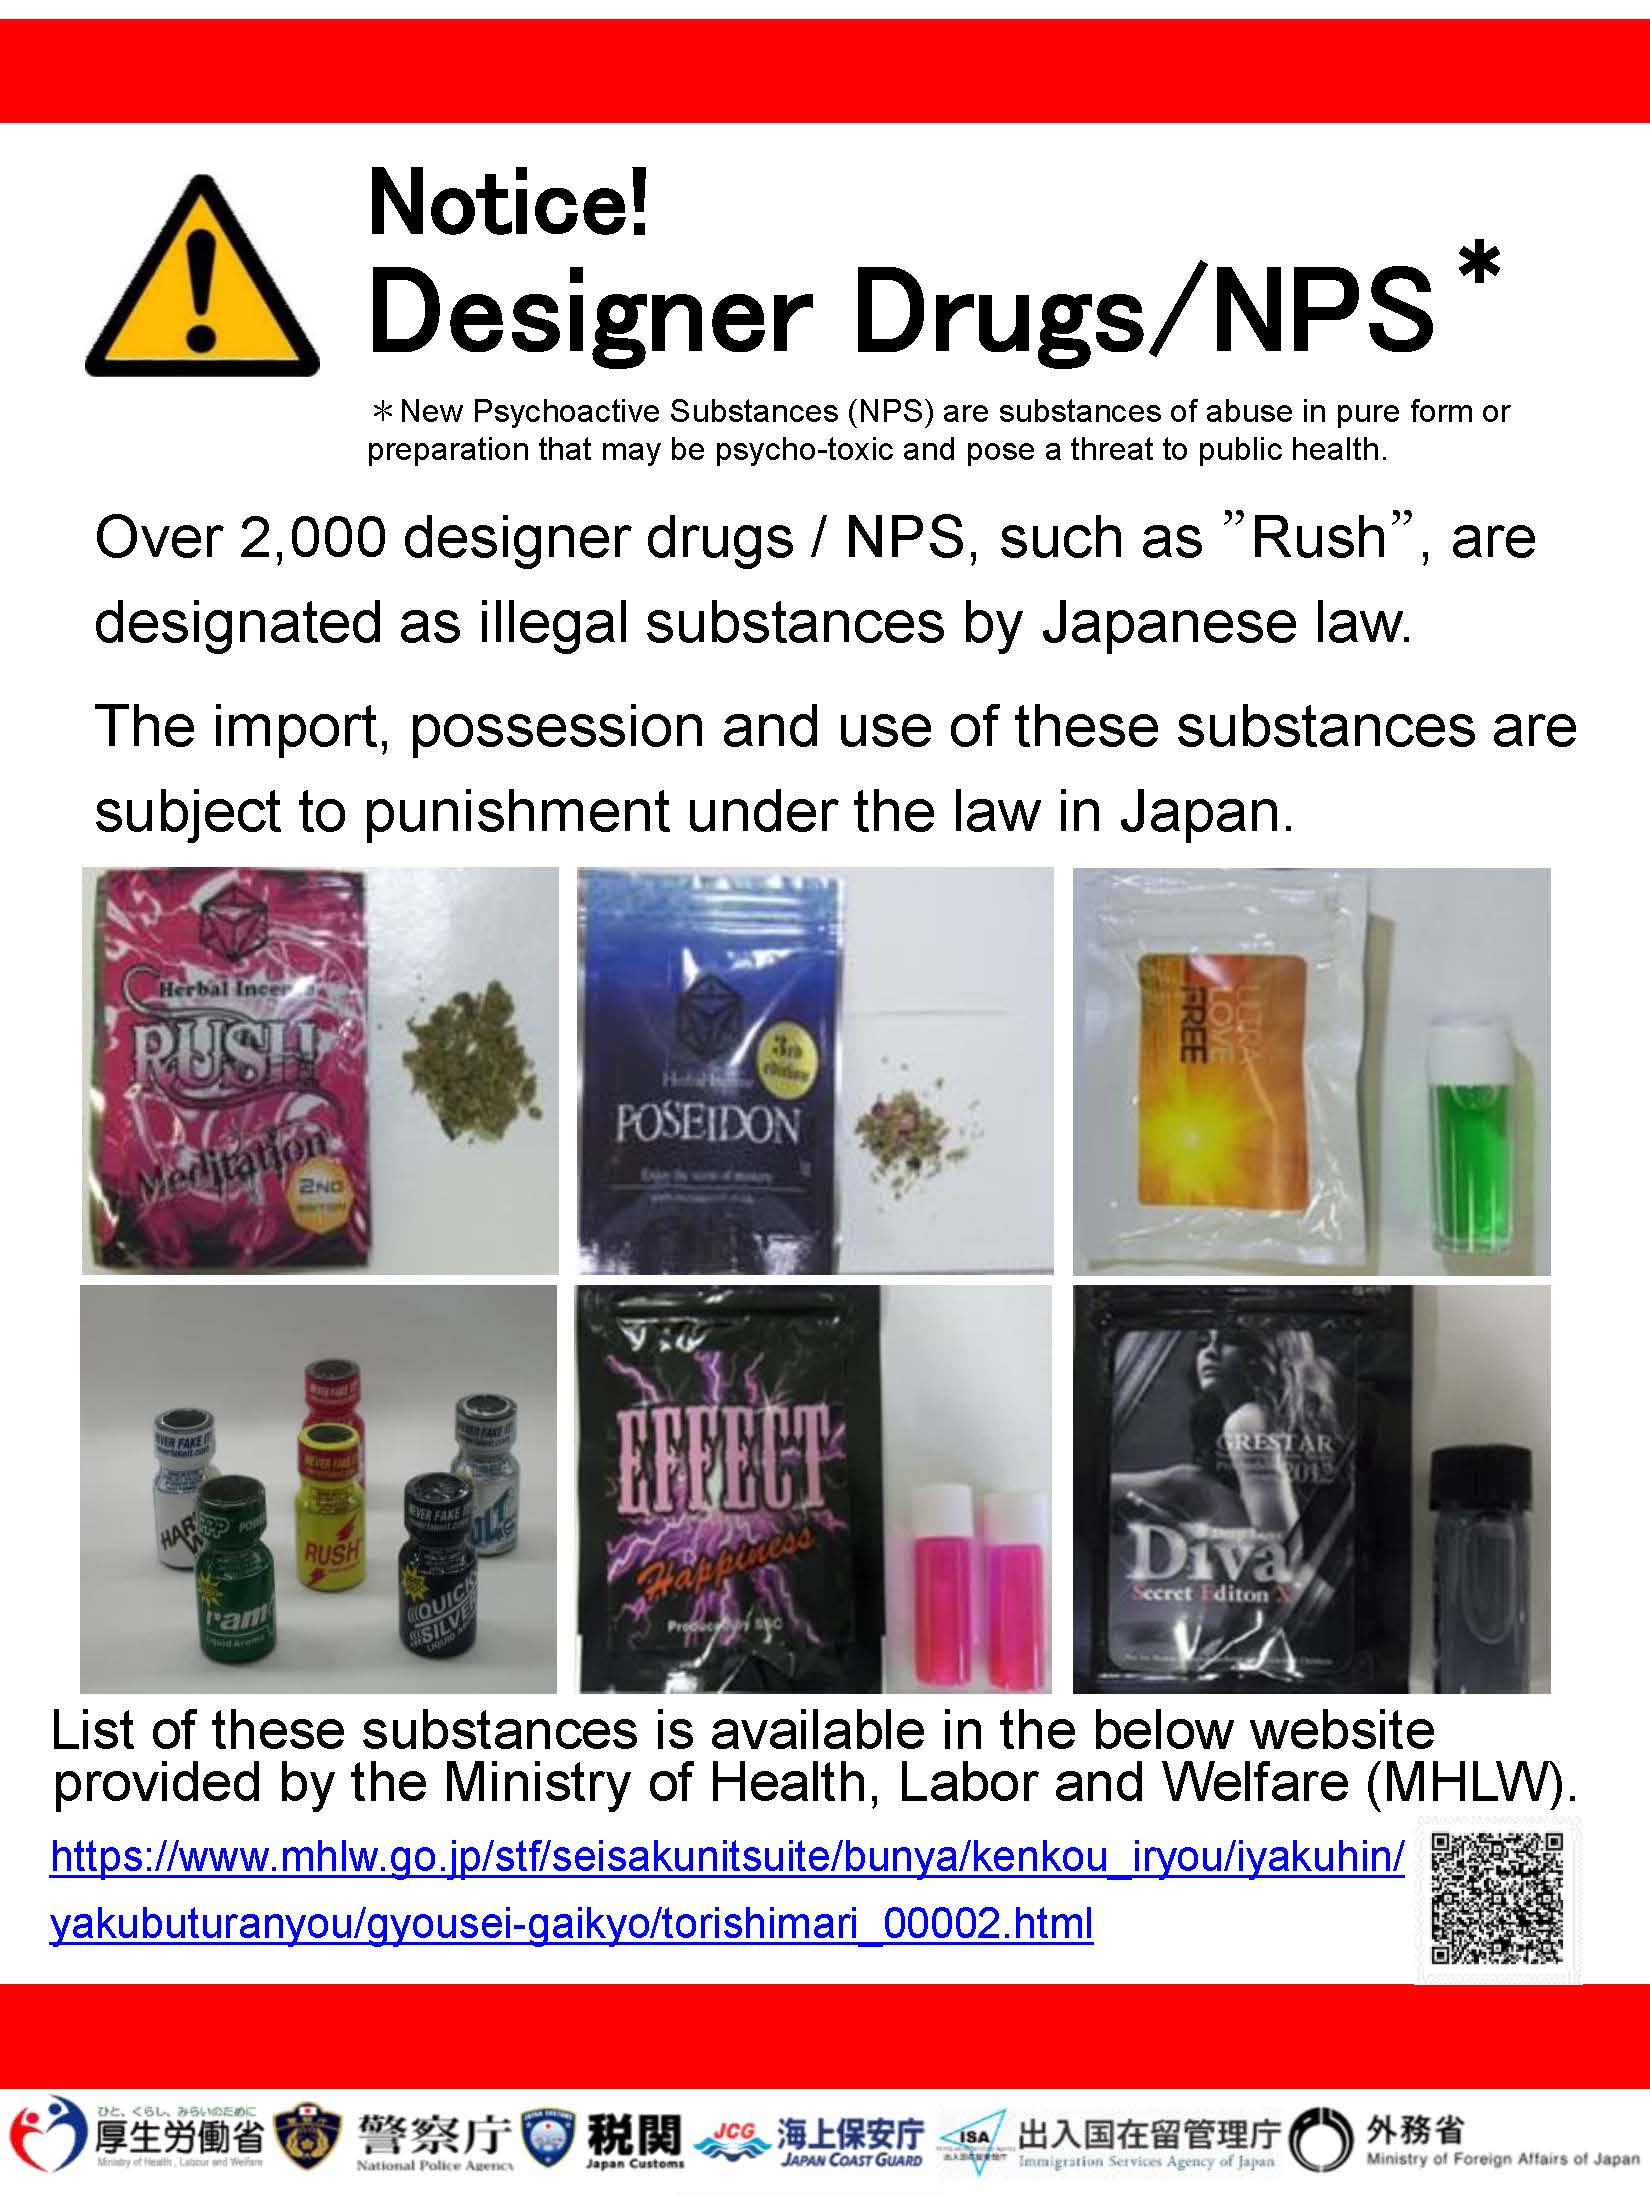 Designer Drugs_e.jpg